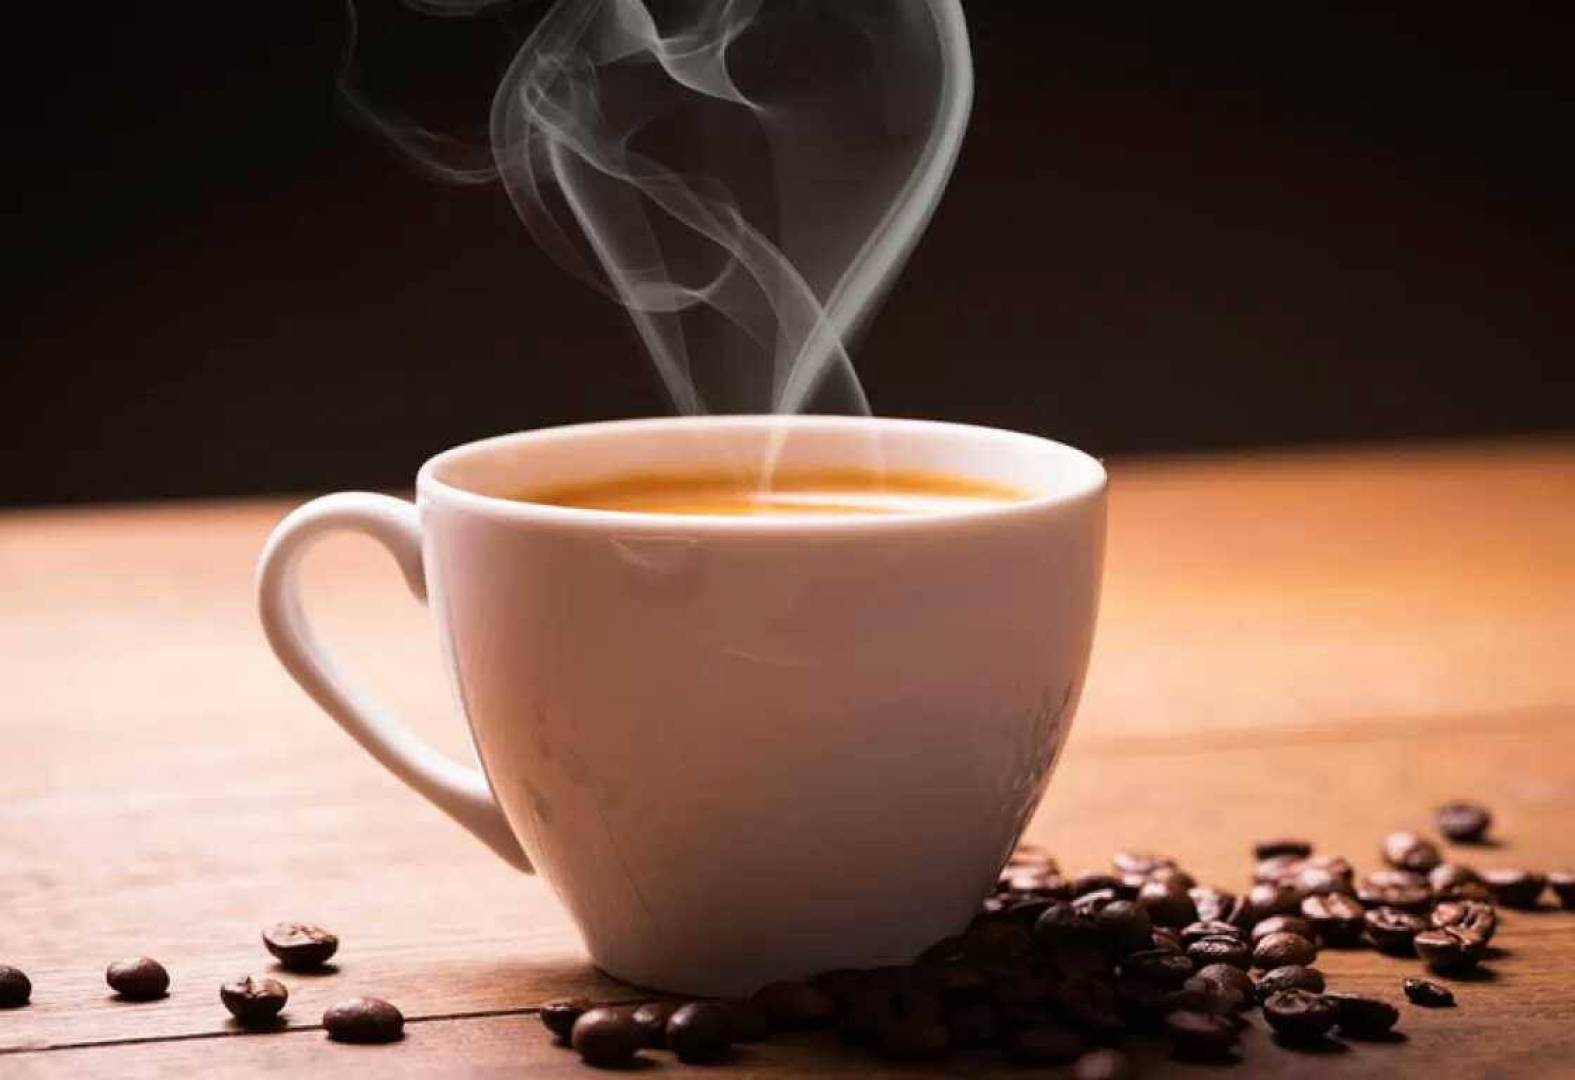 أدوية يمنع تناولها مع قهوة الصباح